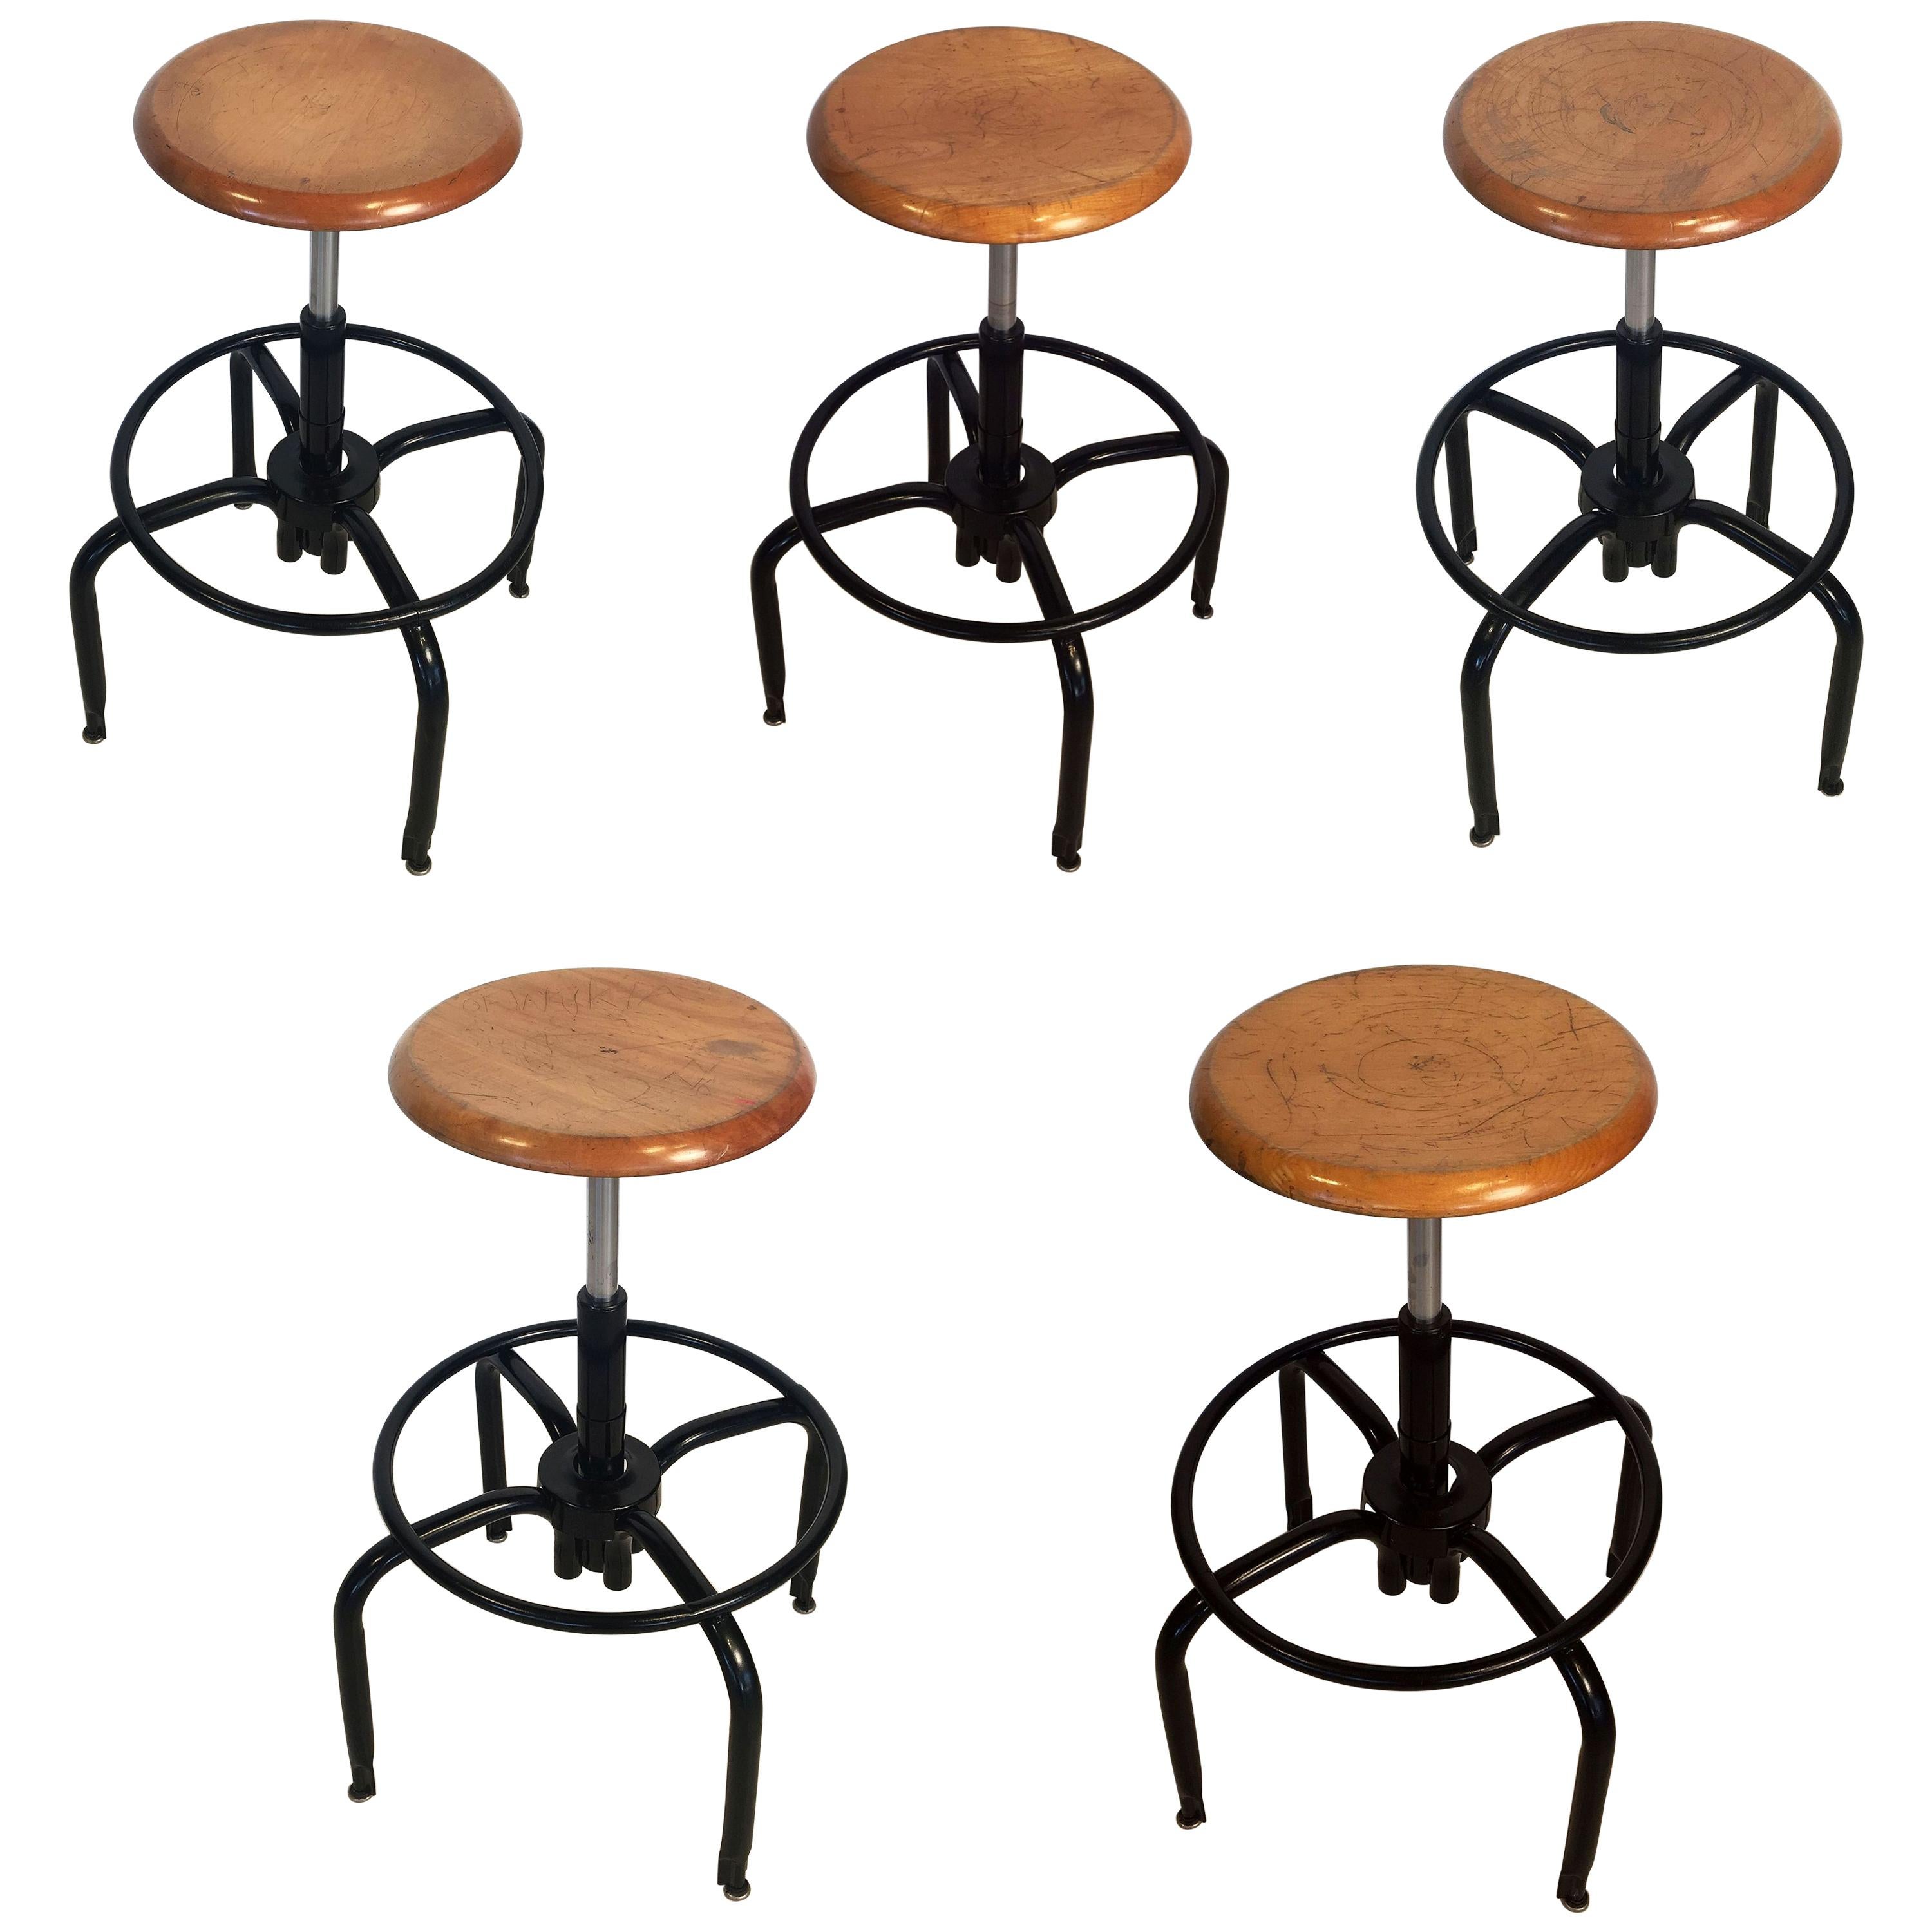 Tabourets de bar en métal noir et chrome avec sièges ronds en bois (prix individuel)